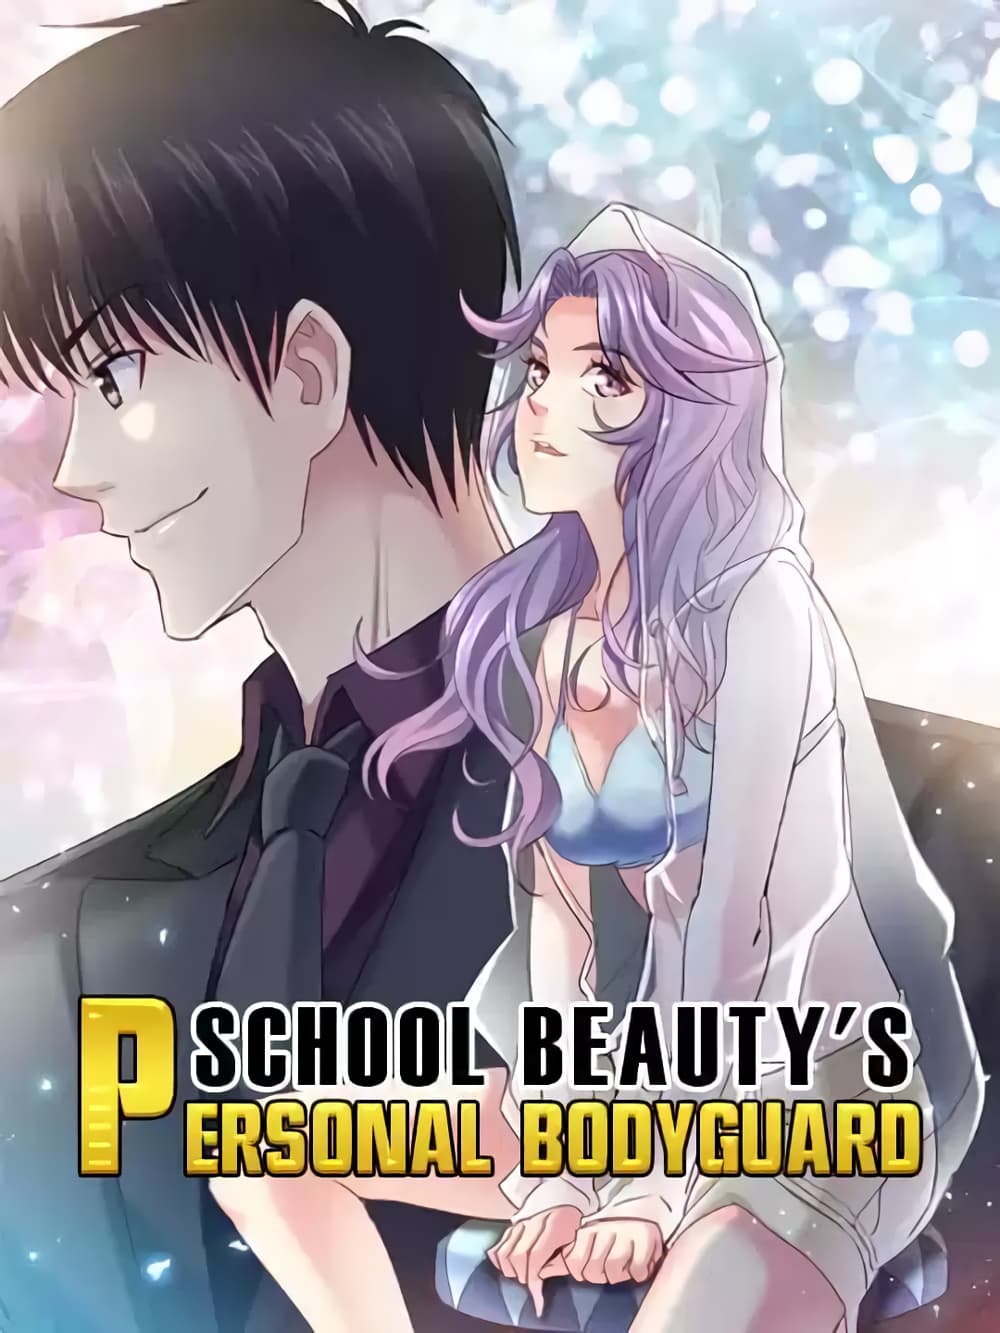 School Beauty's Bodyguard 294 (1)